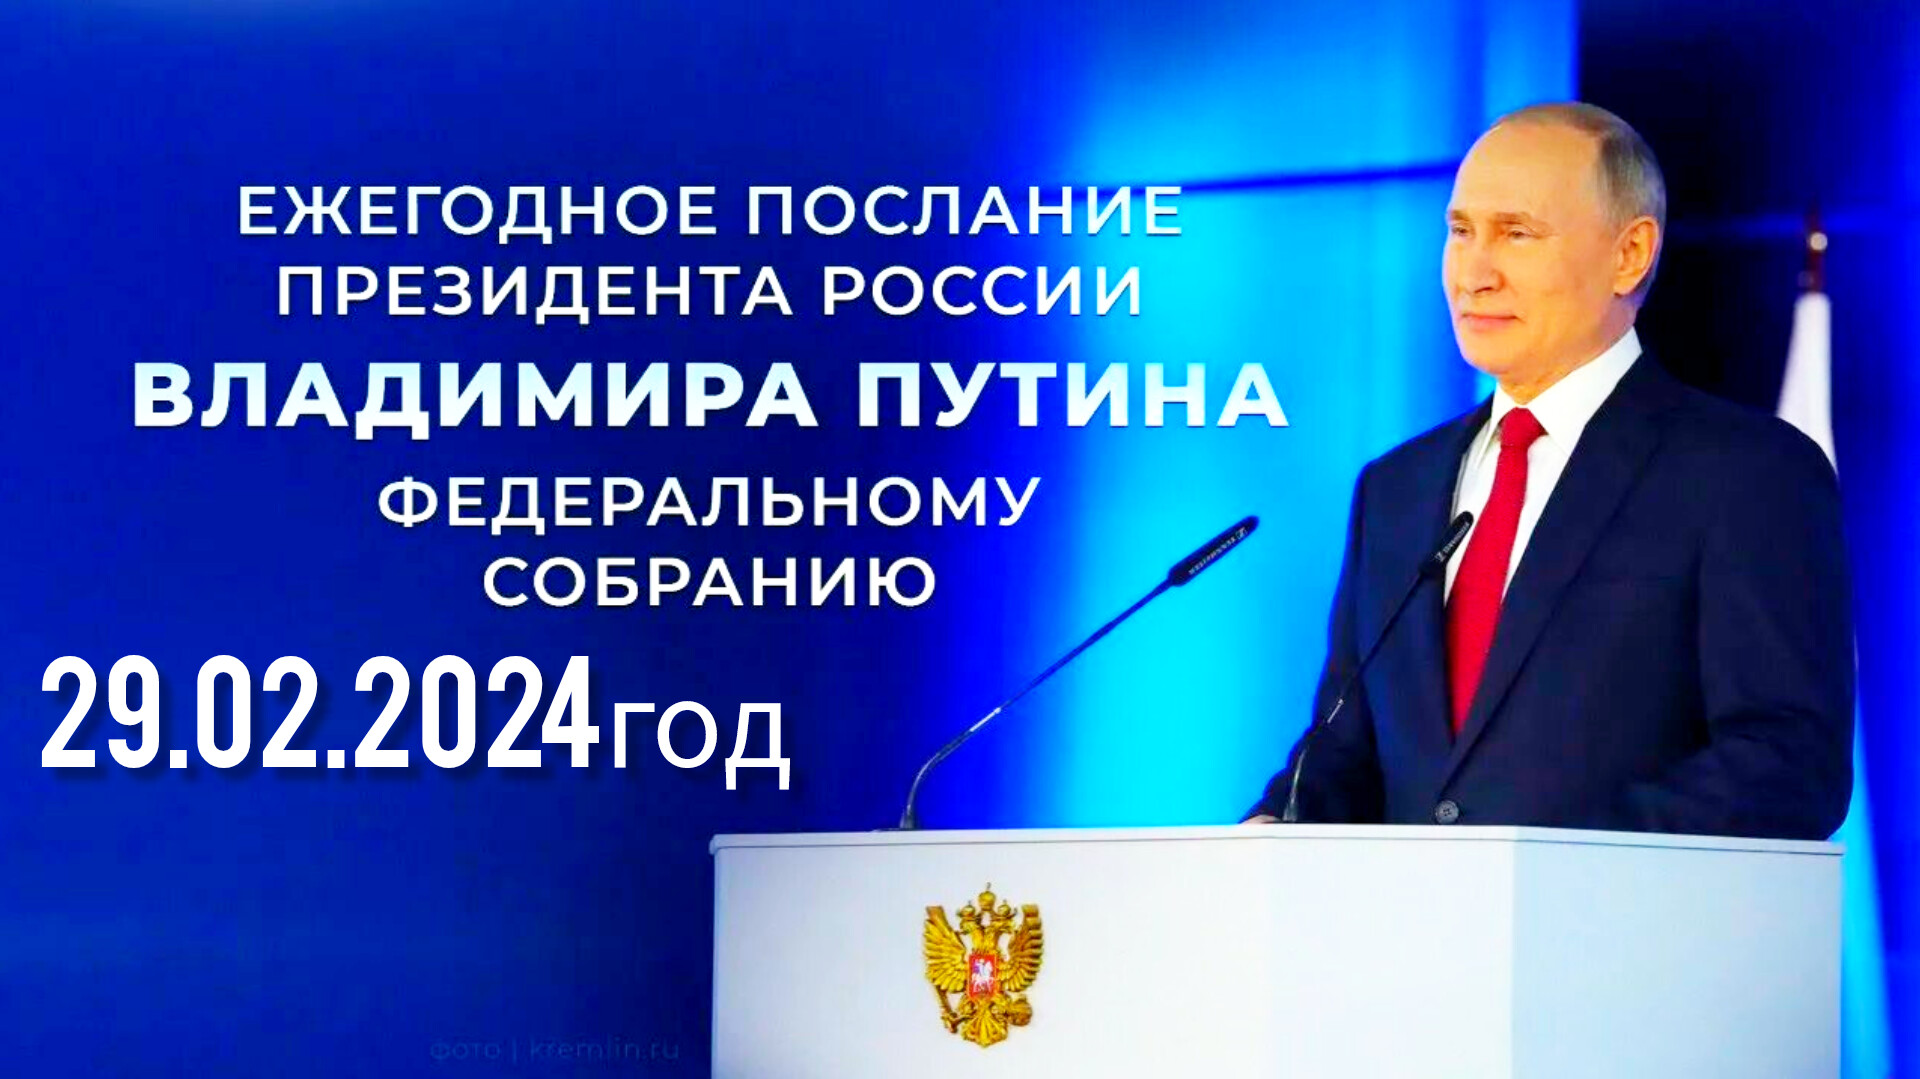 Послание Президента России Владимира Путина Федеральному Собранию 29.02.2024 год ⚡⚡⚡